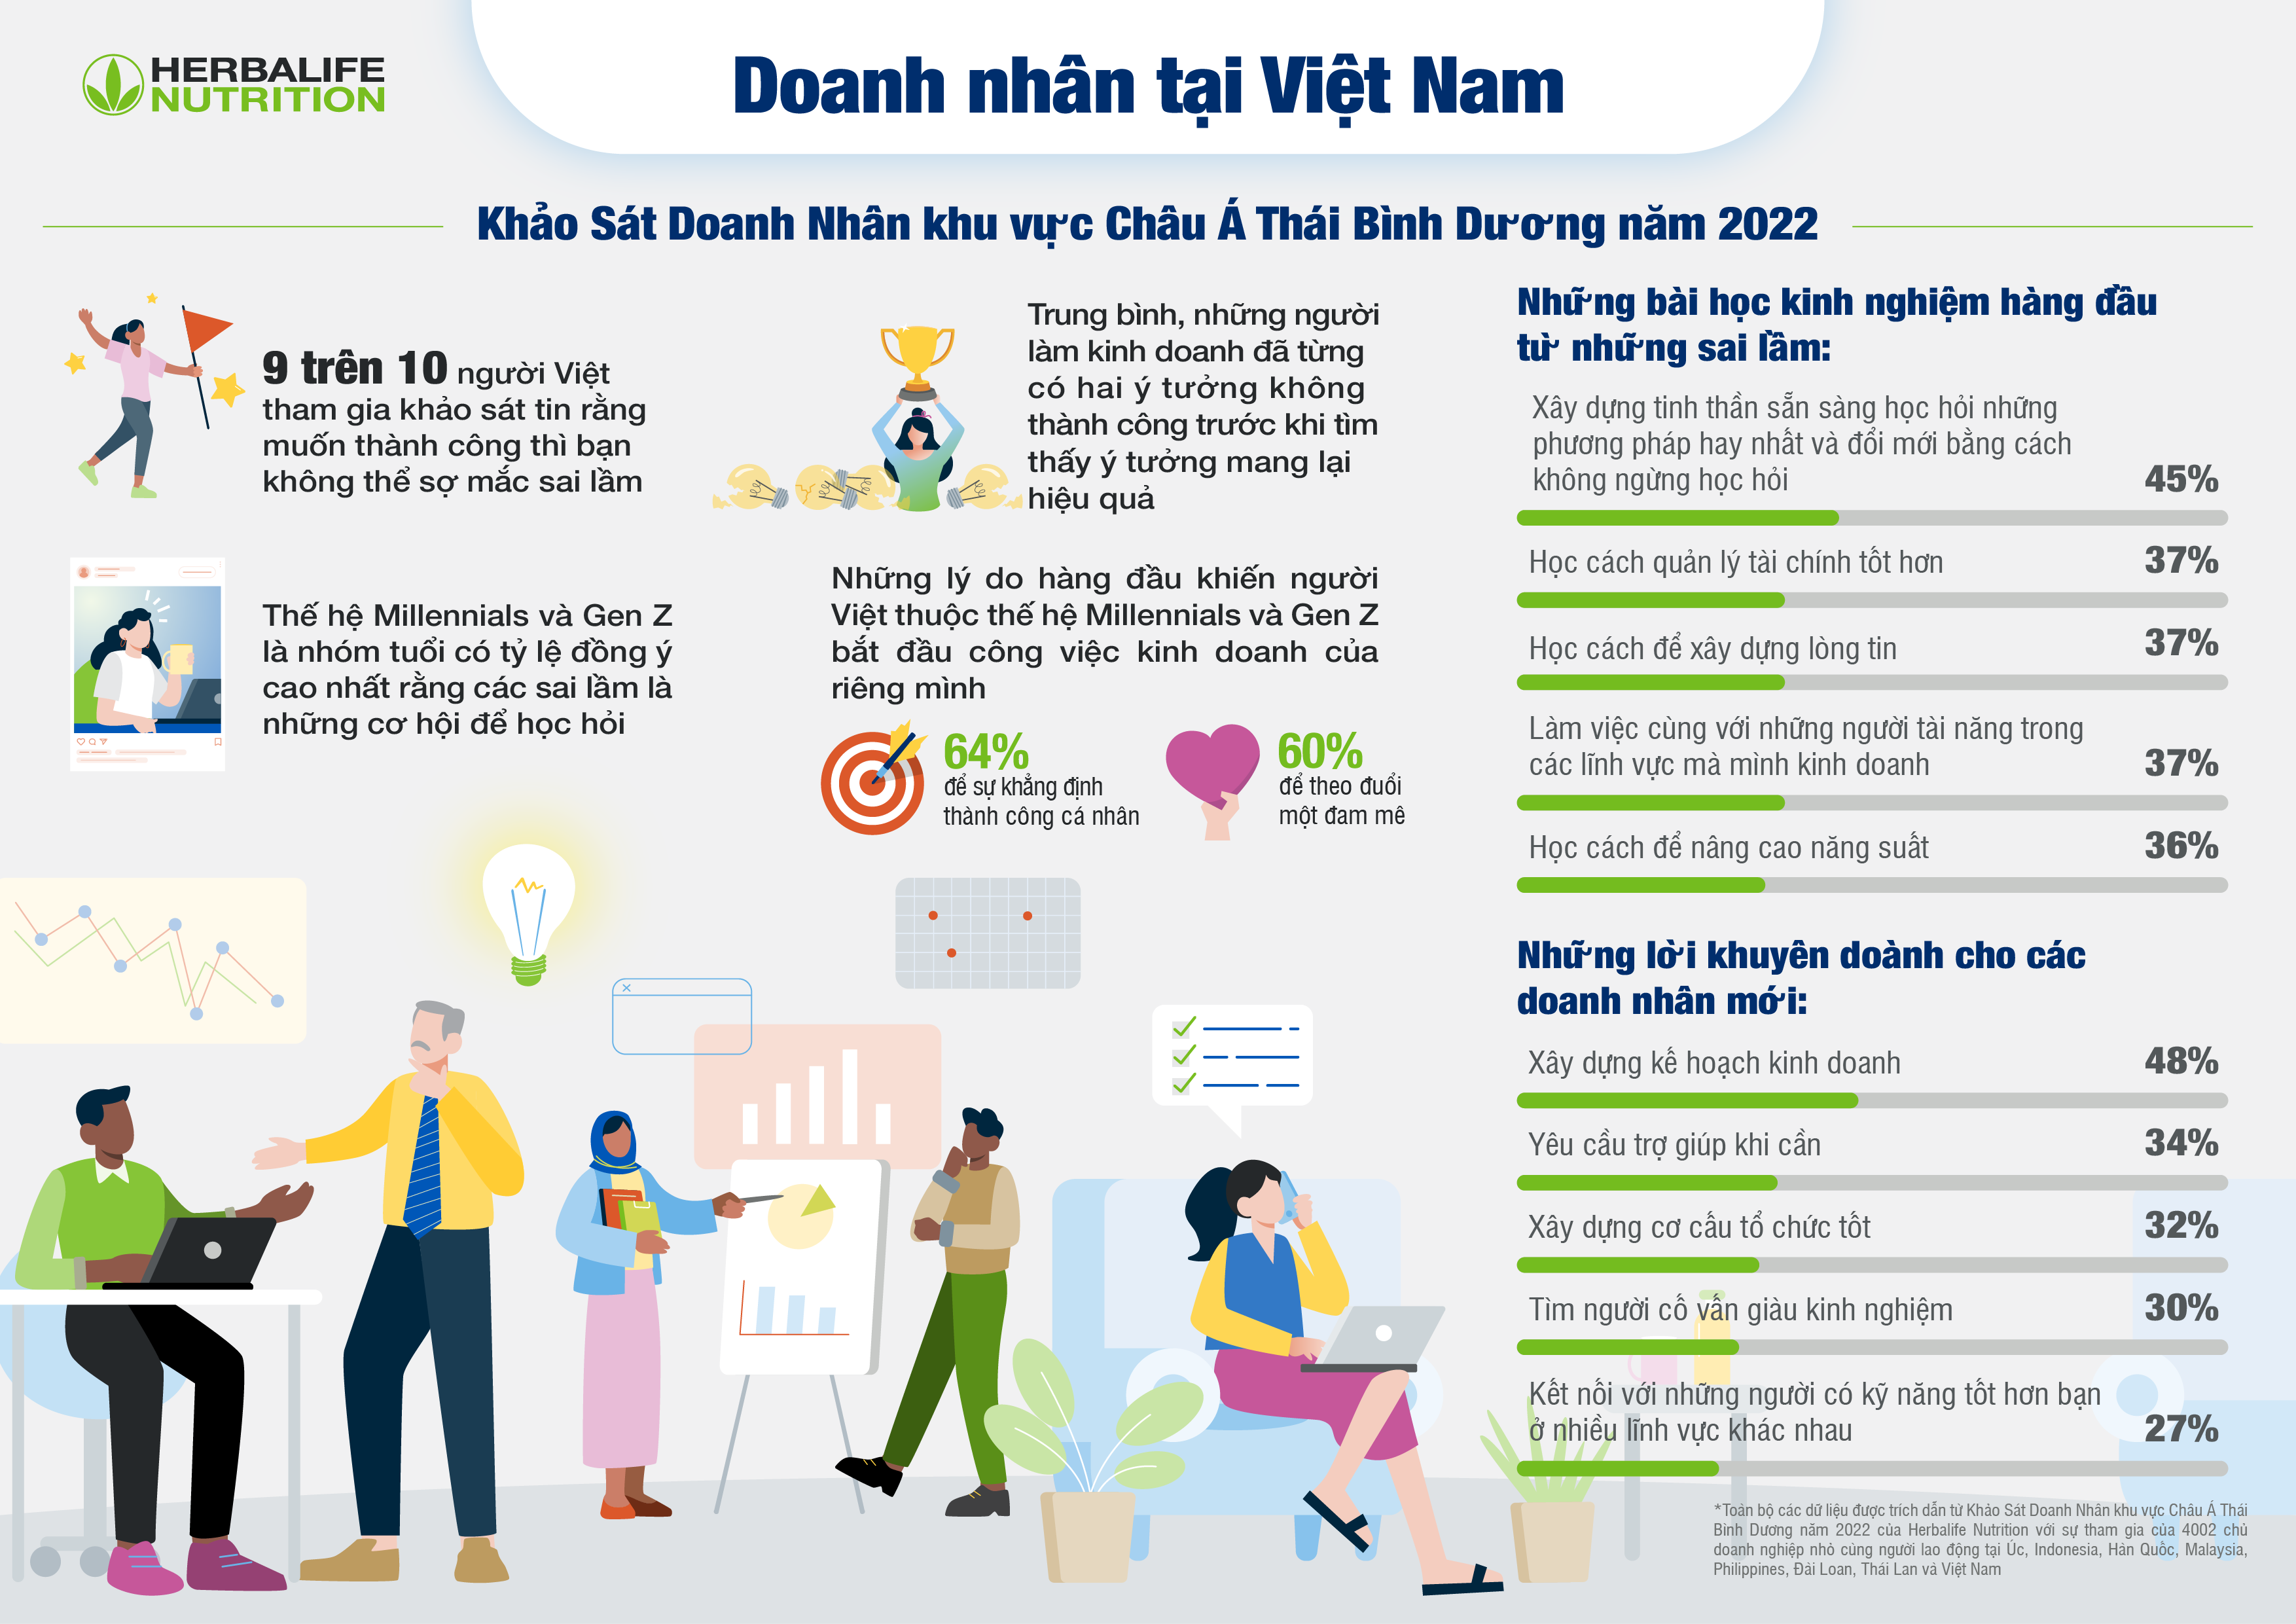  Khảo sát của Herbalife Nutrition: 94% người Việt được hỏi cho biết “muốn thành công thì không thể sợ mắc sai lầm”